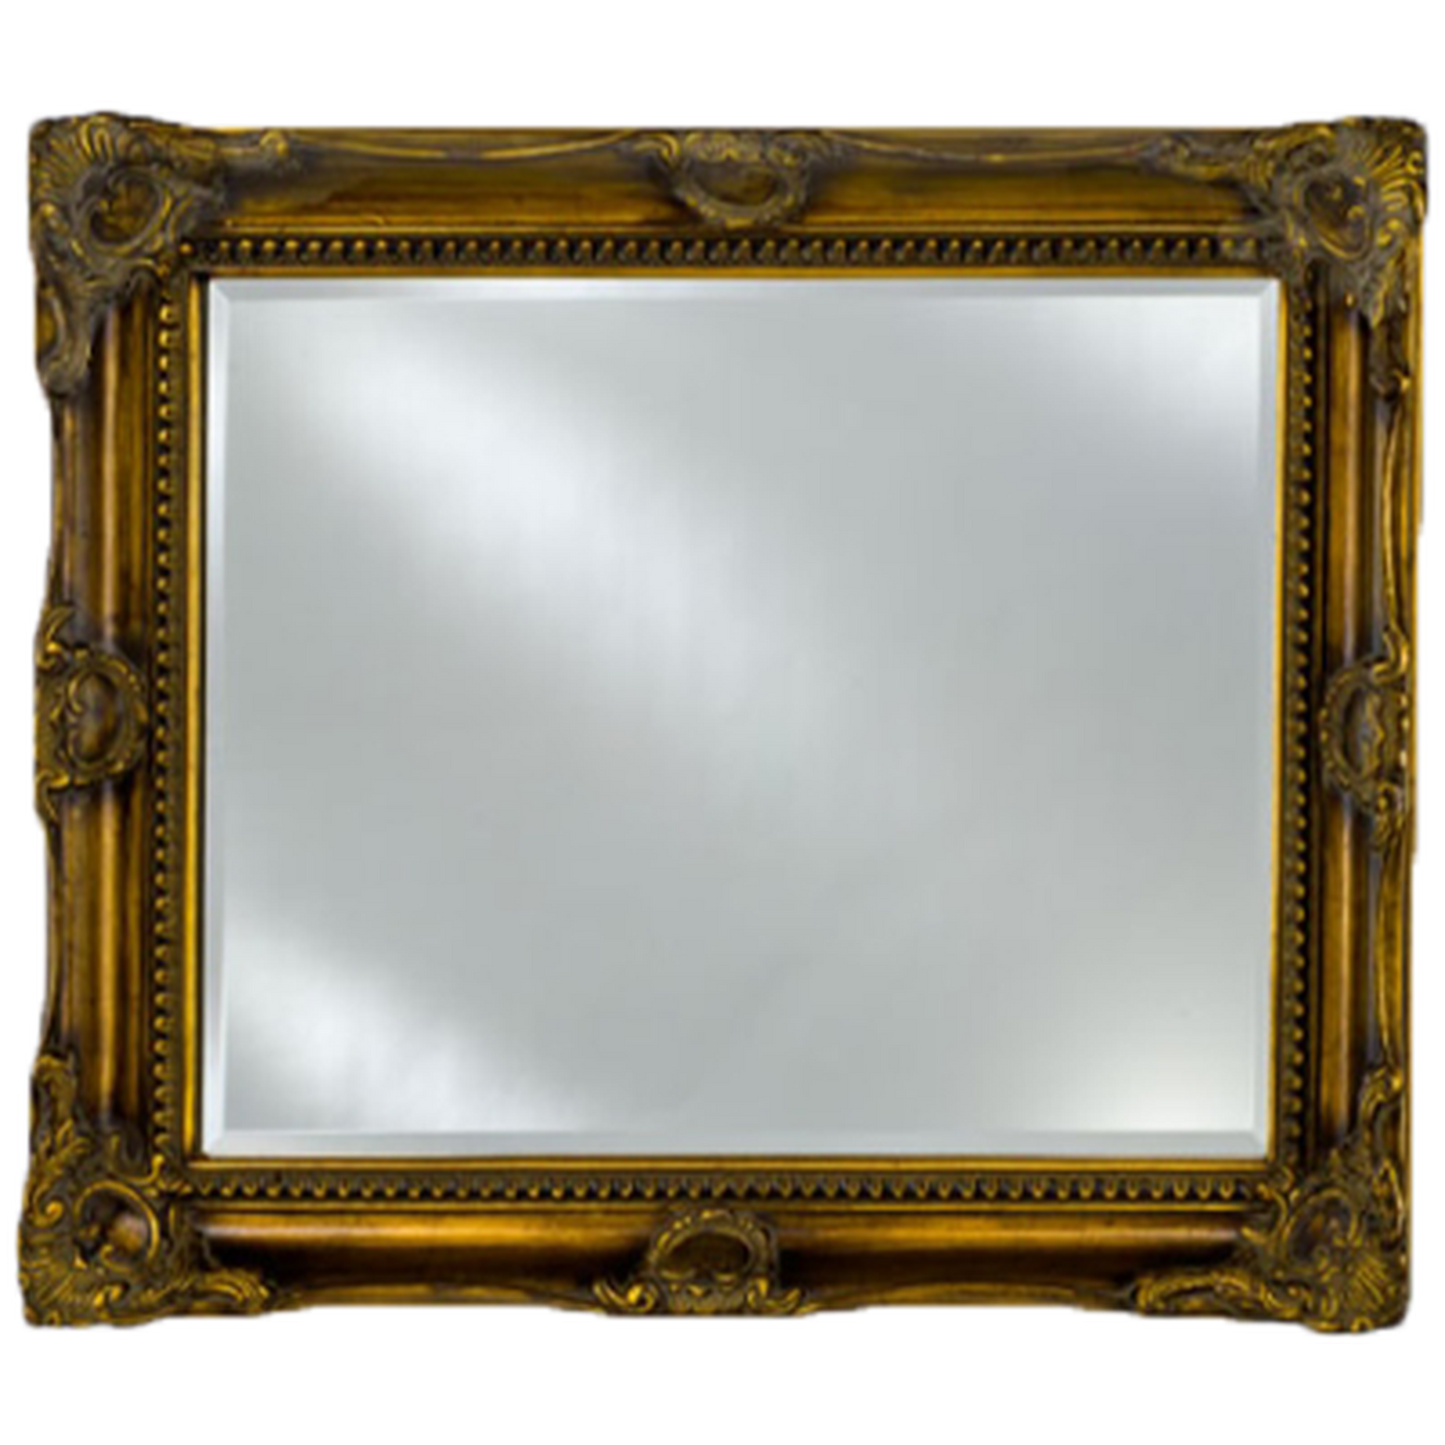 Afina Estate 28" x 34" Antique Burnished Gold Vanderbilt Royale Frame With 1" Bevel Mirror